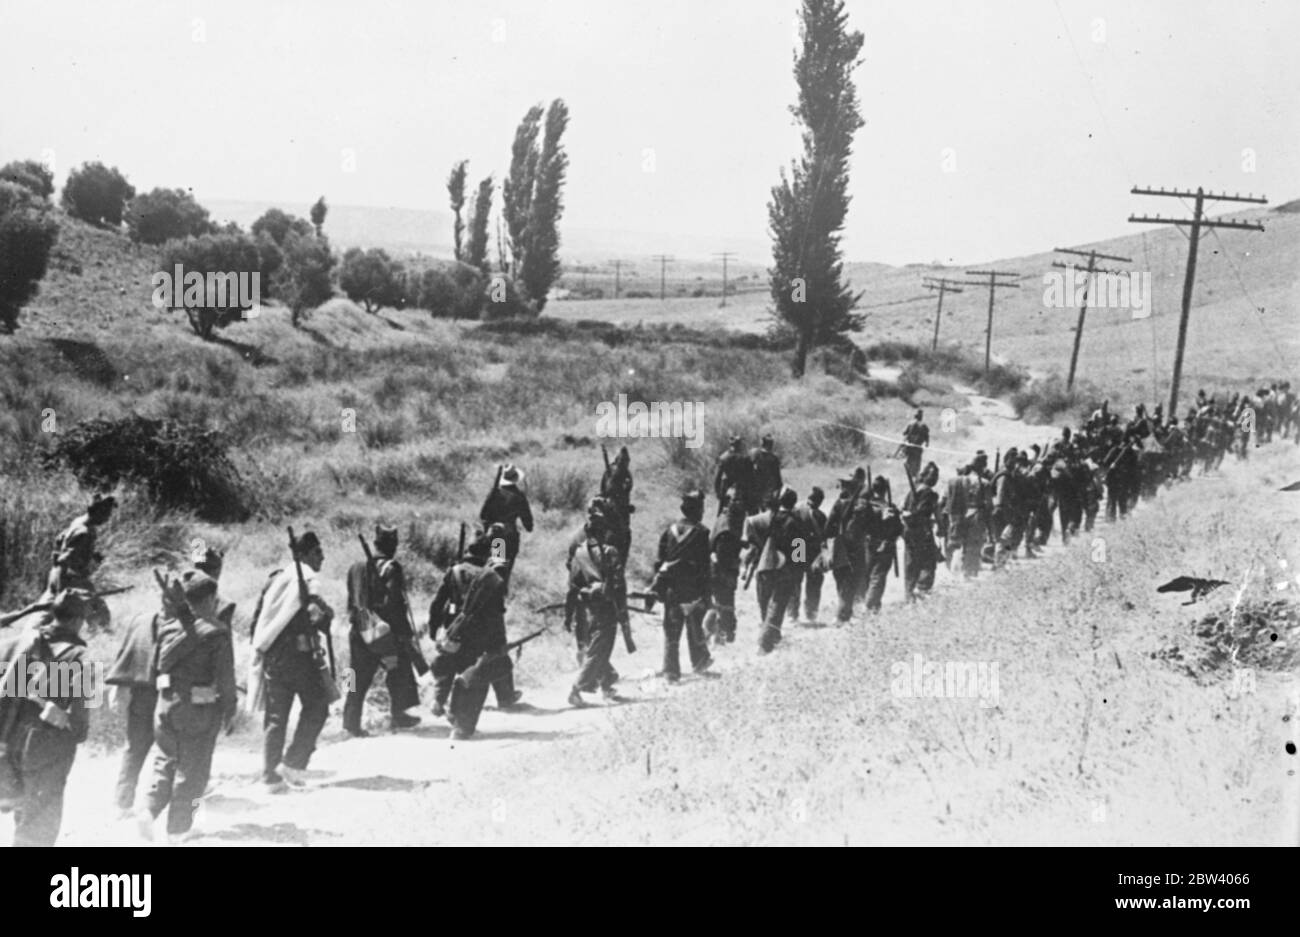 Loyalisten marschieren zur Talavera Front hinauf. Foto zeigt: Regierungsmilizen schreiten auf einer Straße an der Talavera Front südlich von Madrid vor, wo die Loyalisten versuchen, den Vormarsch der Rebellen zurückzuhalten, die versuchen, zur Erleichterung von Toledos Alcazar durchzubrechen. Laut Berichten der Rebellen sind die Aufständischen nur wenige Kilometer von ihrem Ziel entfernt. 17. September 1936 Stockfoto